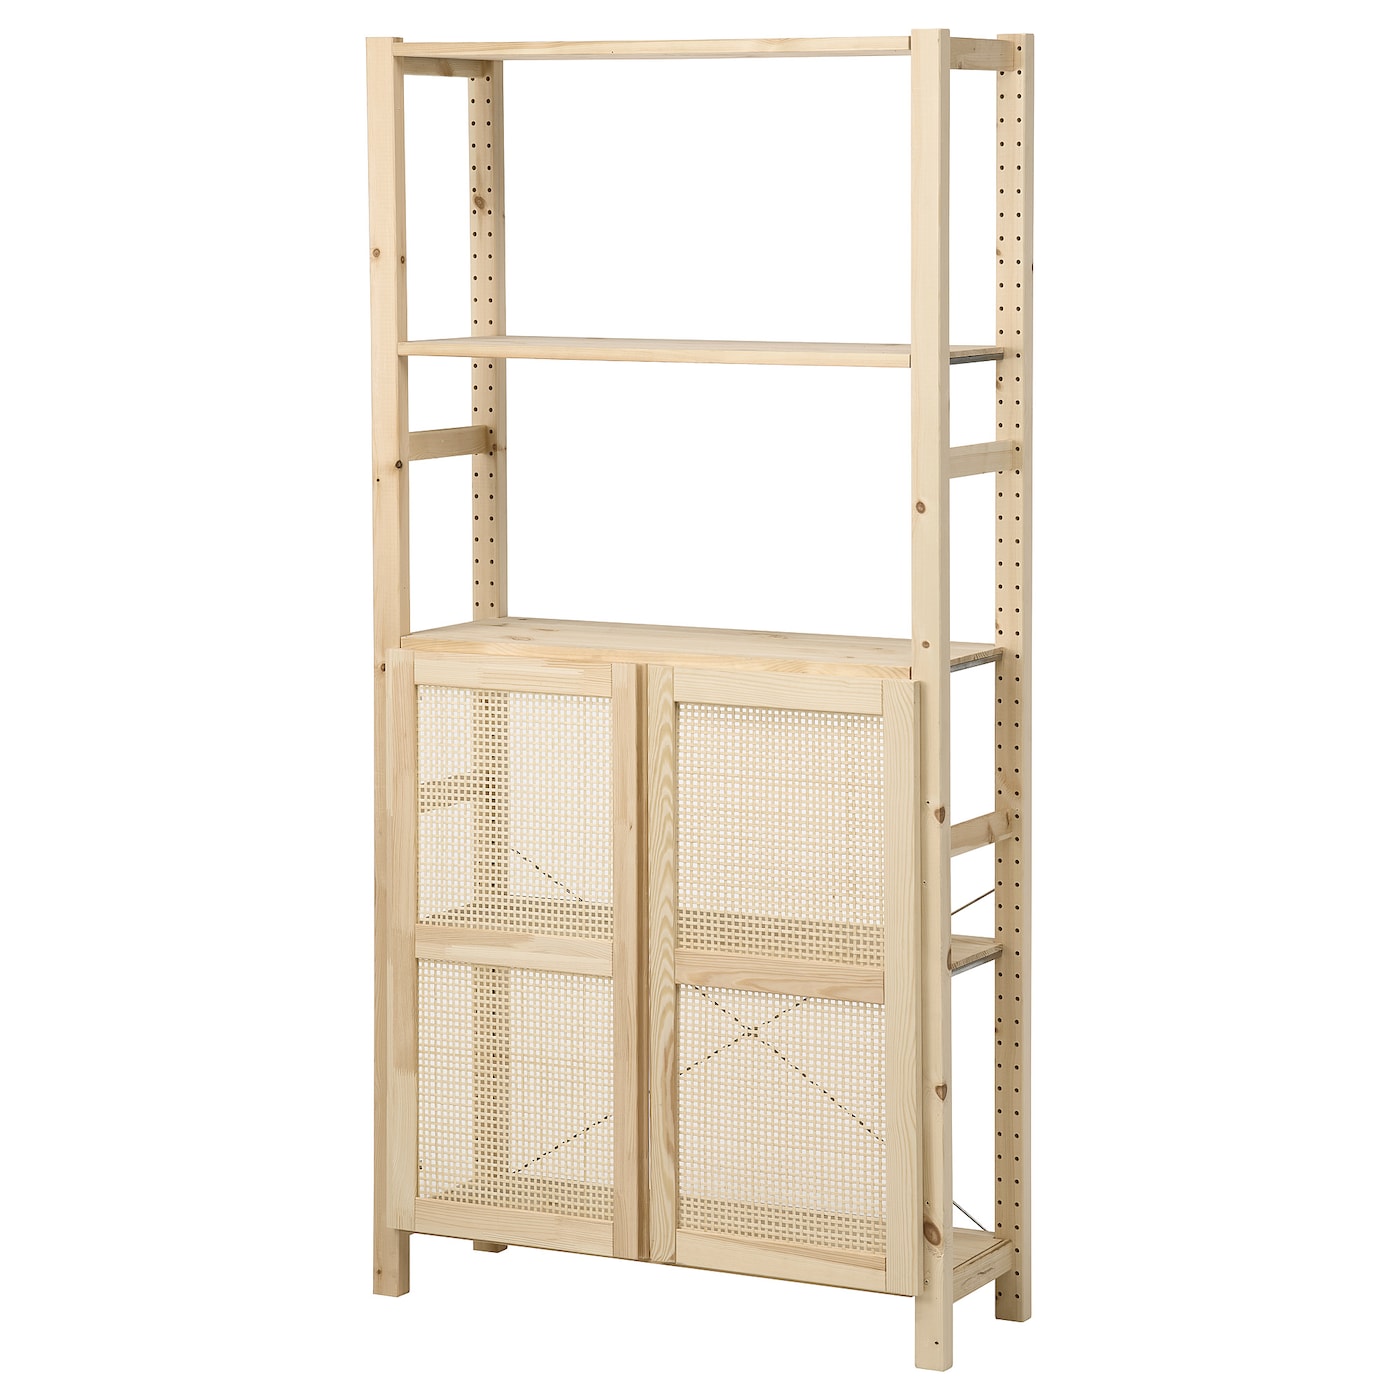 Книжный шкаф - IVAR IKEA/ ИВАР ИКЕА,  179х89 см, под беленый дуб